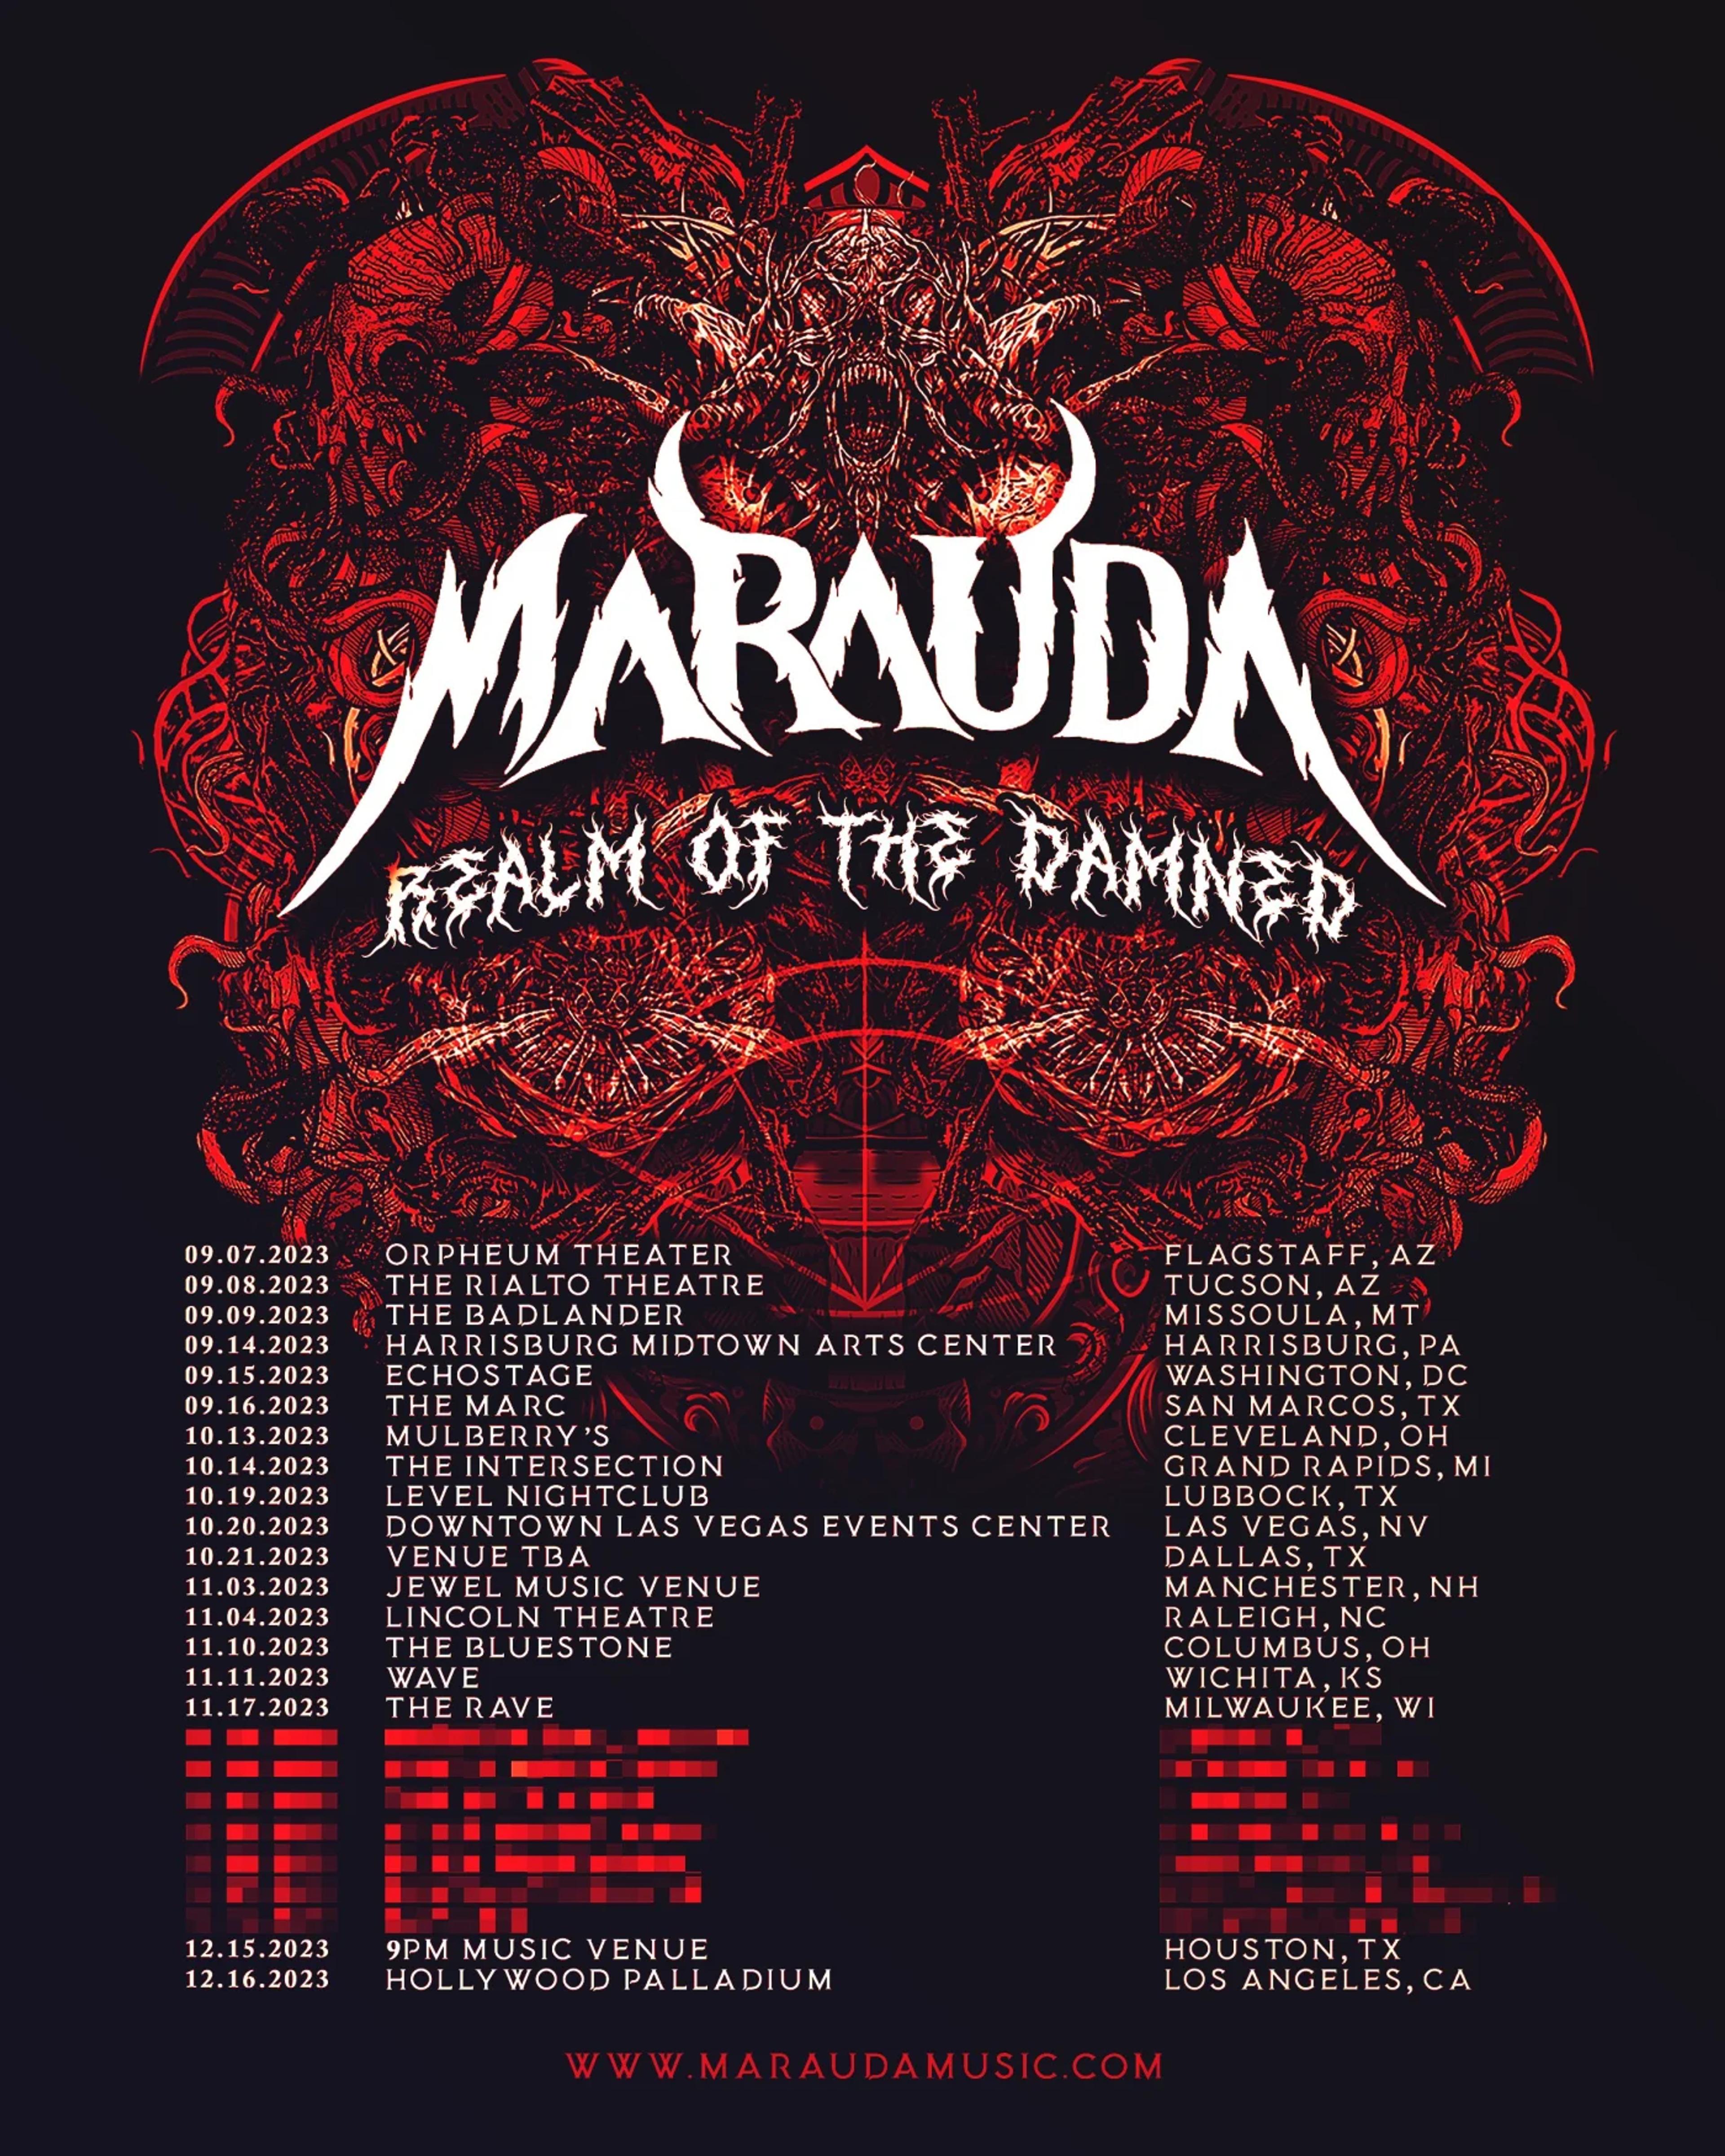 Marauda  "Realm Of The Damned" Tour 2023